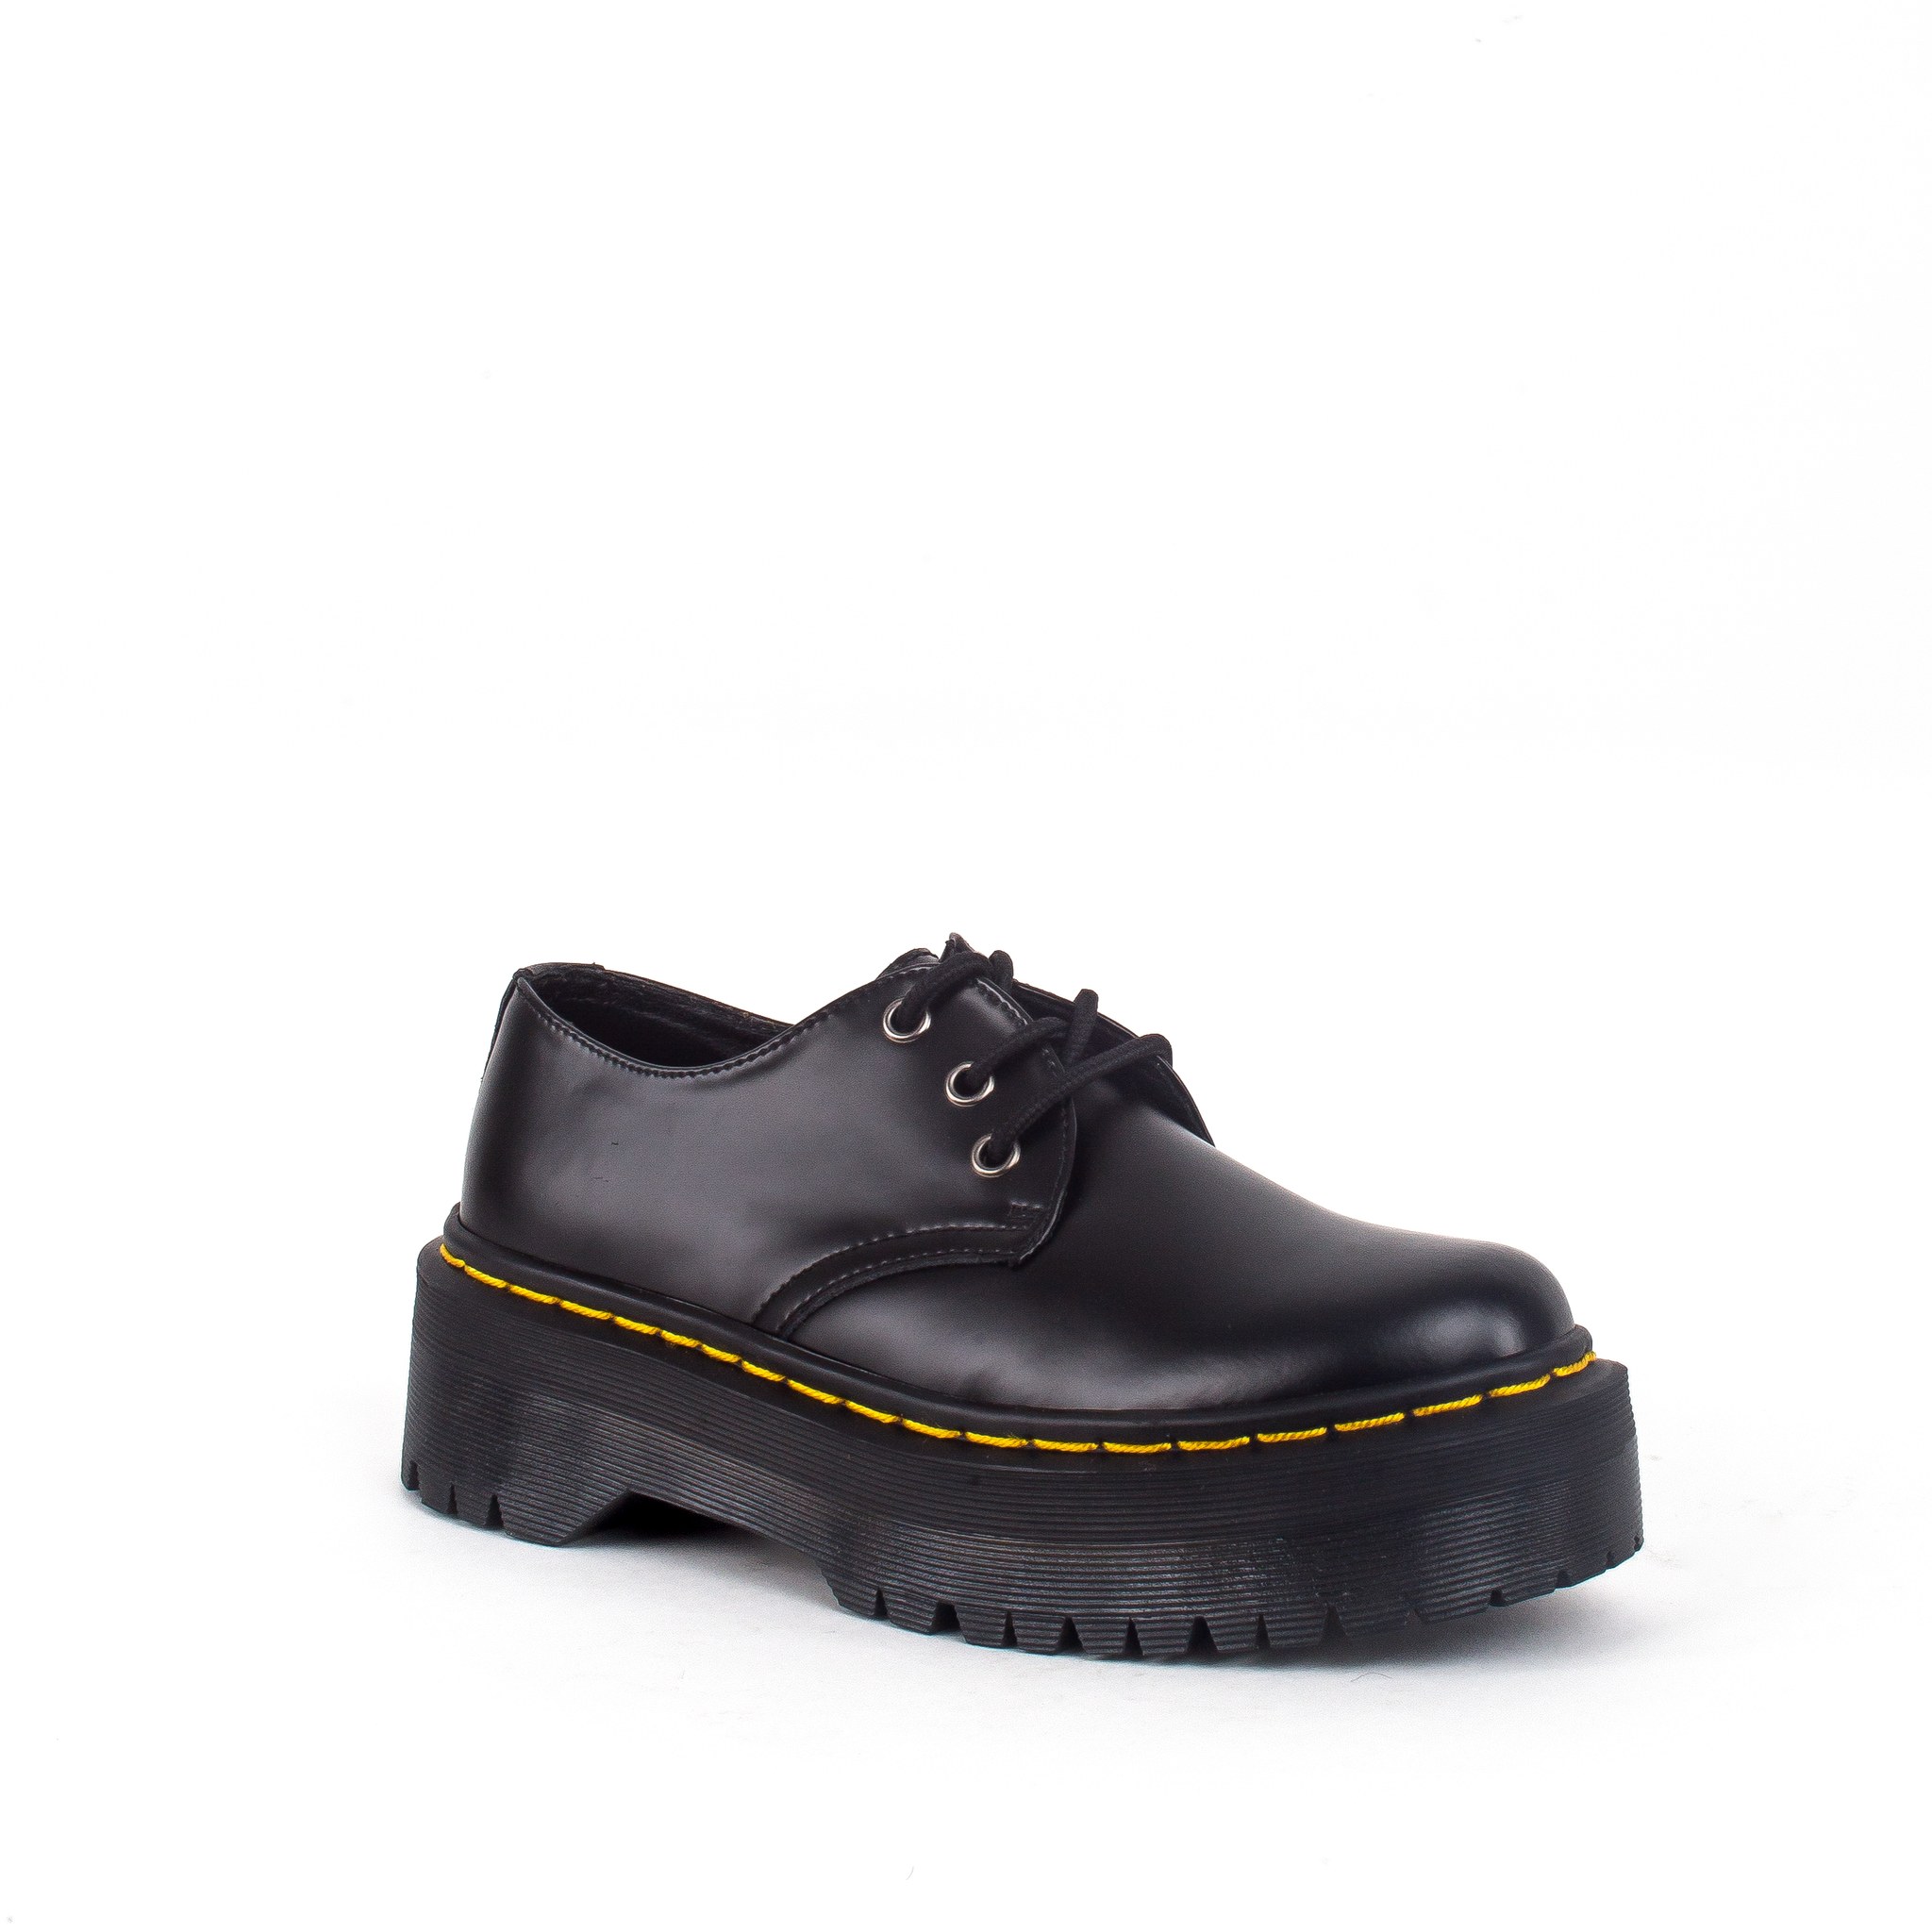 Zapato Oxford Quad 501